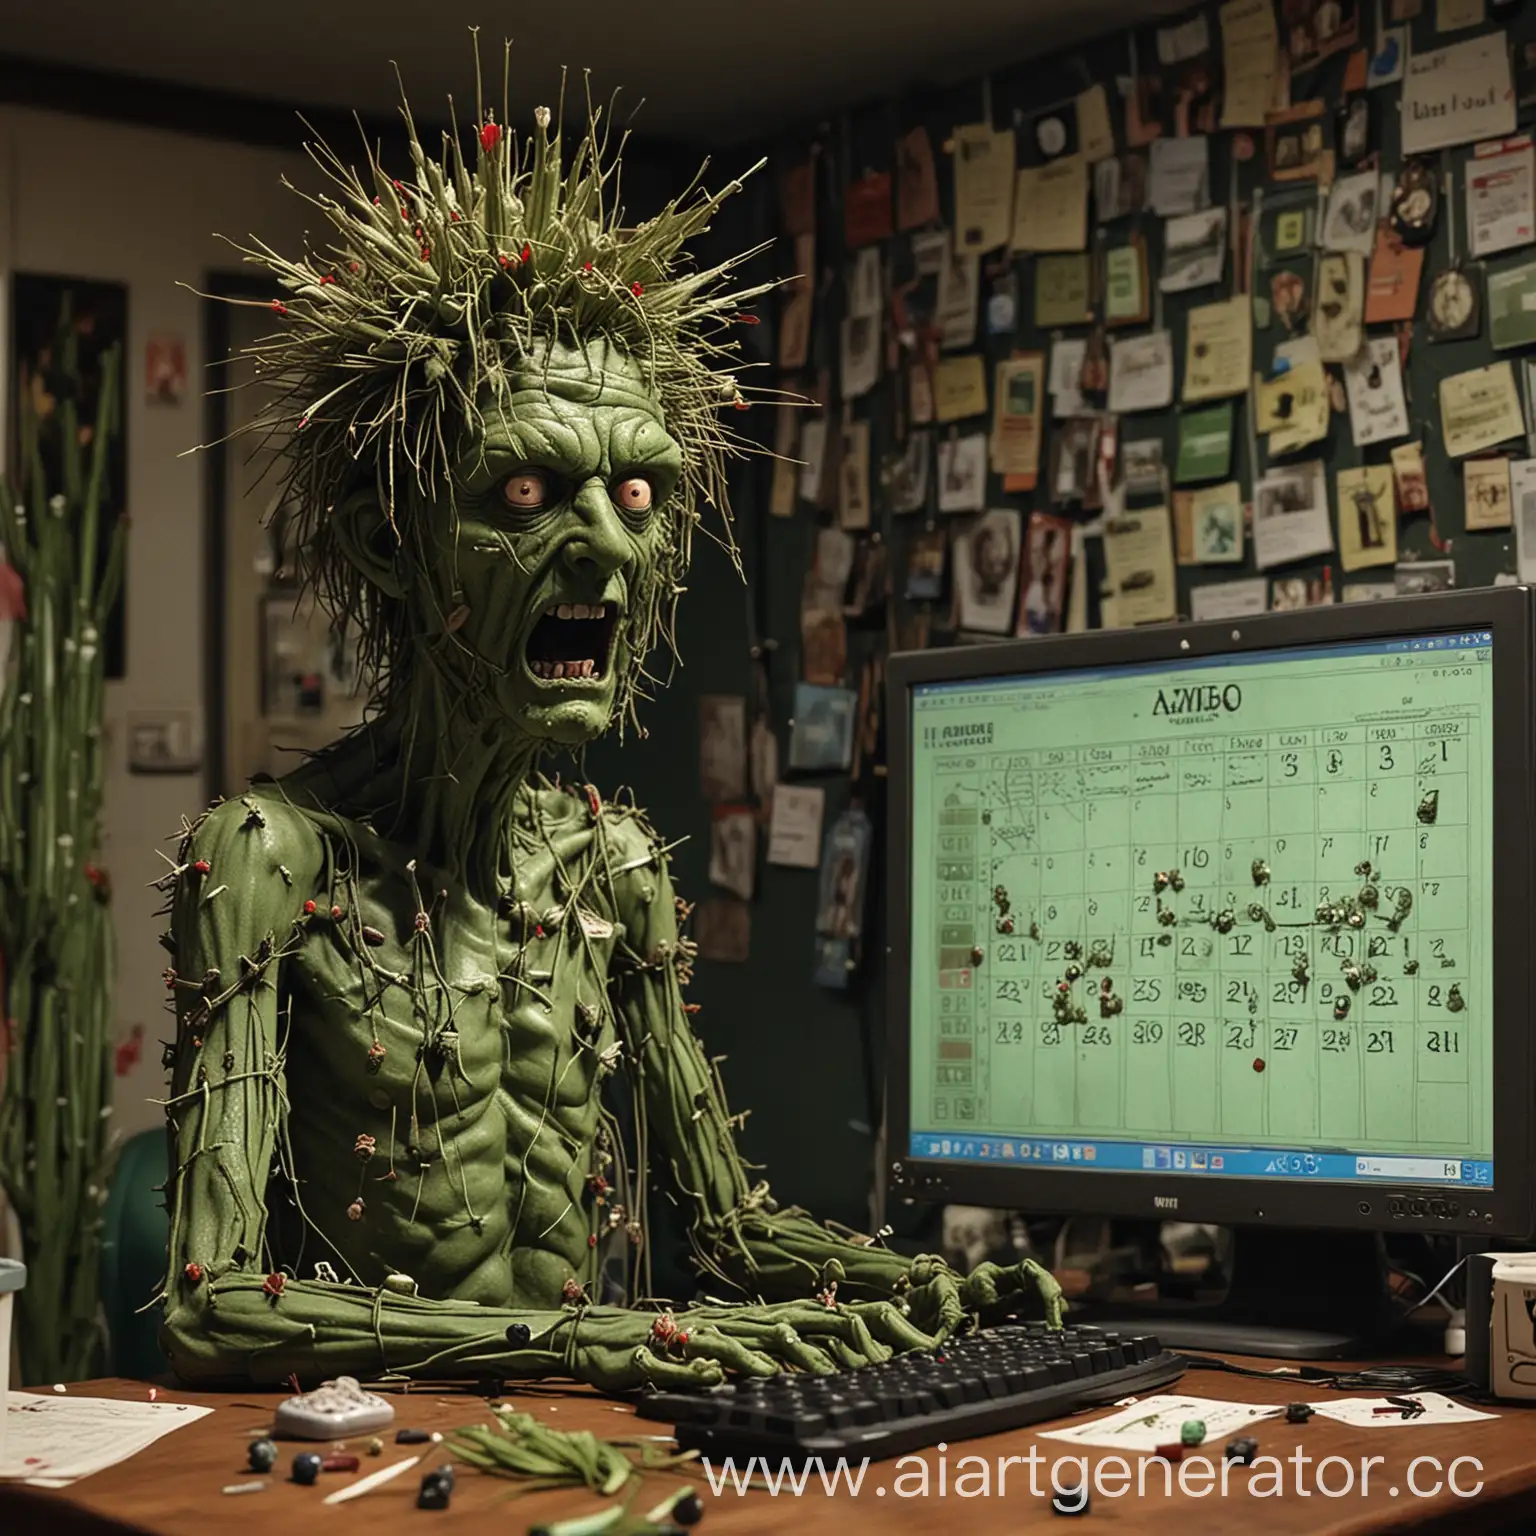 Зеленый человек с иголками по всему телу, похожий на кактус, сидит за компьютером, на экране компьютера игра про зомби, а он с удивлённым лицом смотрит на рядом висящий календарь, где в кружок обведена дата 20 апреля с подписью «Видео».